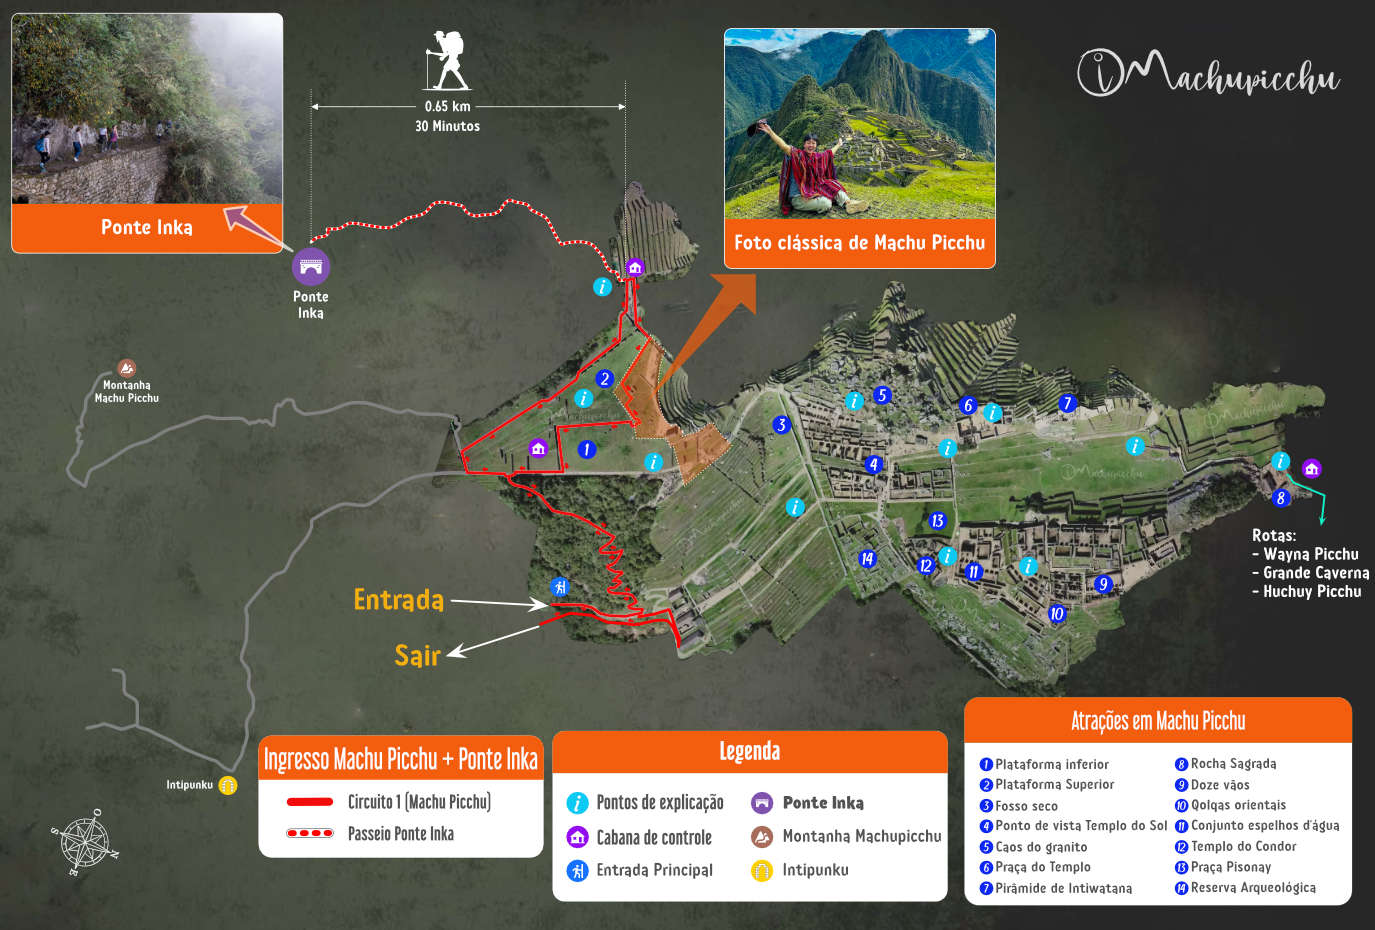 Mapa de ingressos para Machu Picchu + Ponte Inka